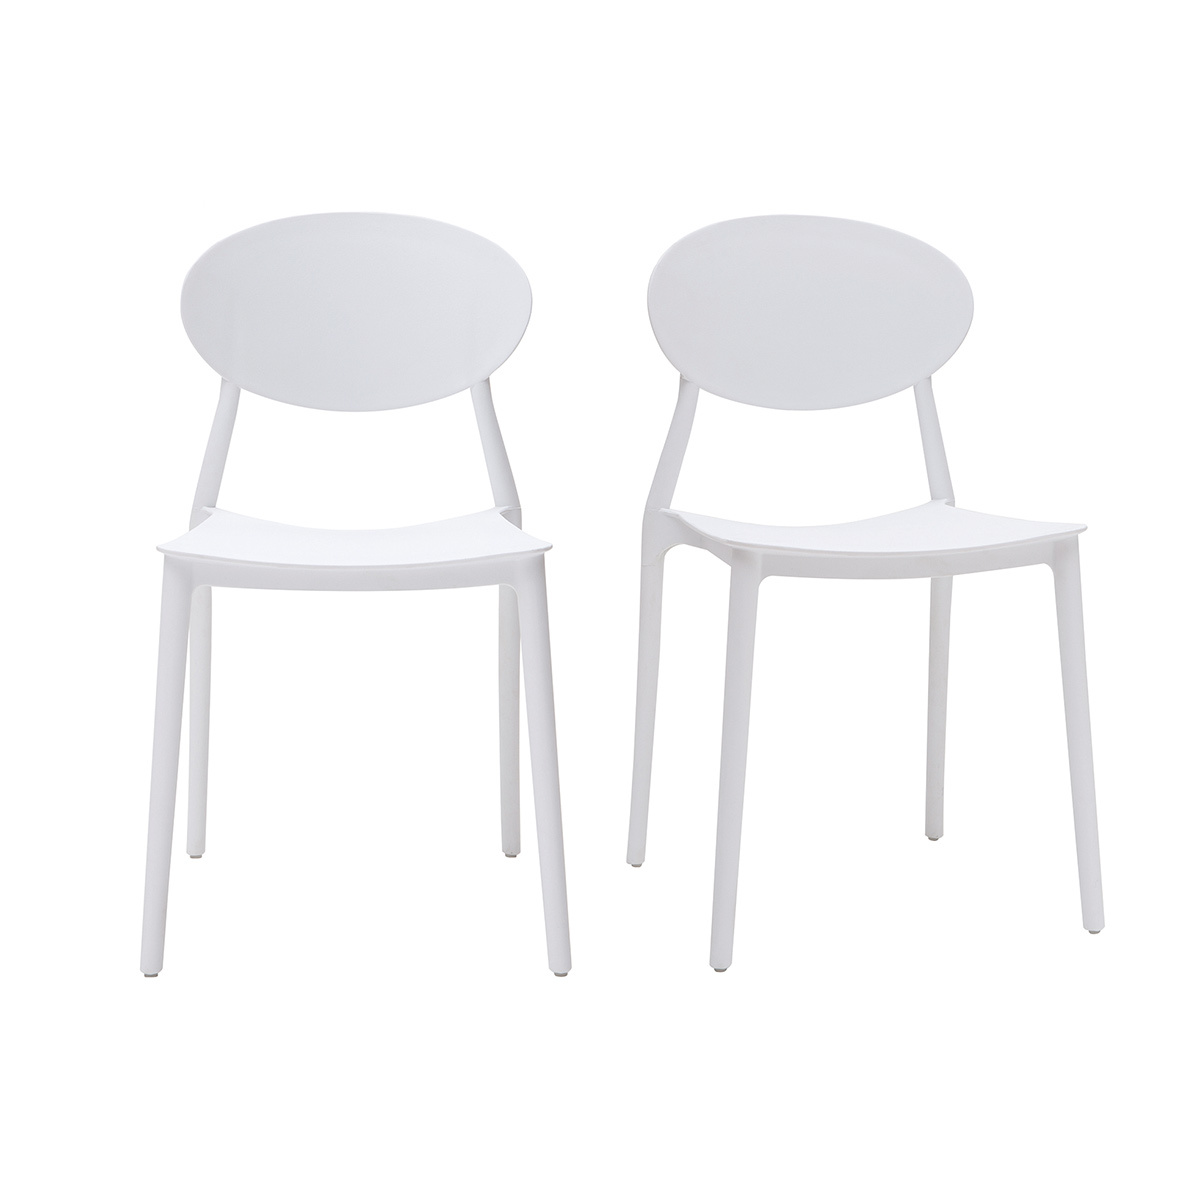 Chaises design empilables blanches intérieur - extérieur (lot de 2) ANNA vue1